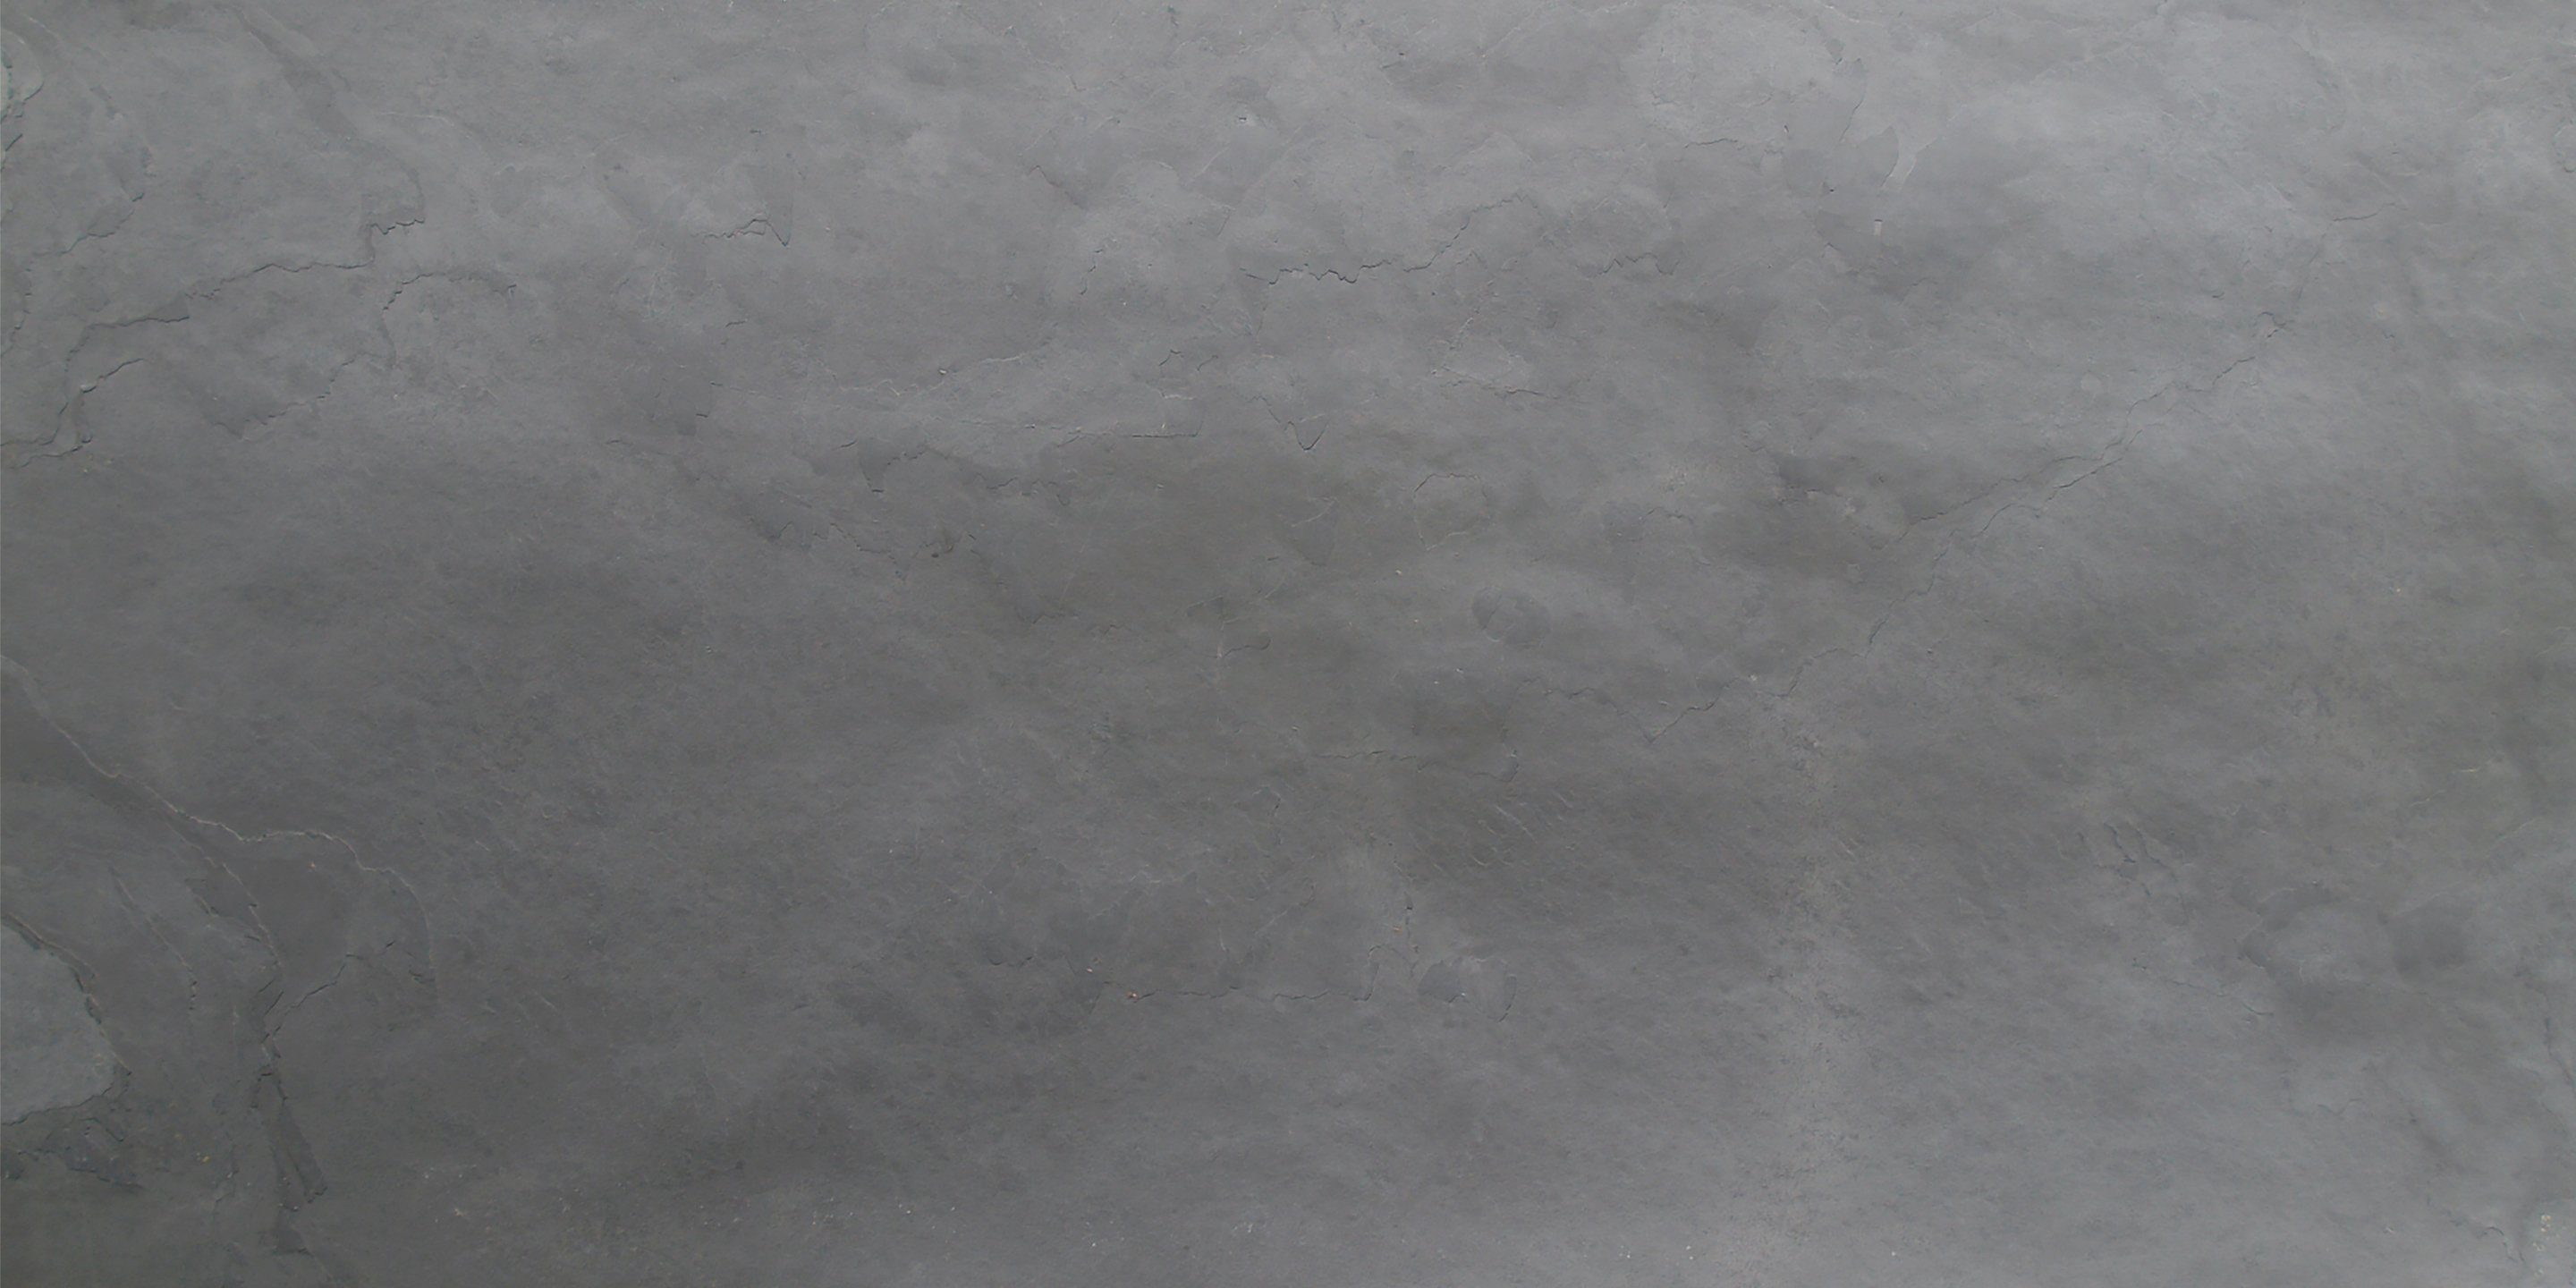 Slate Lite Wandpaneel Negro, BxL: 120x240 cm, 2,88 qm, (1-tlg) aus Echtstein